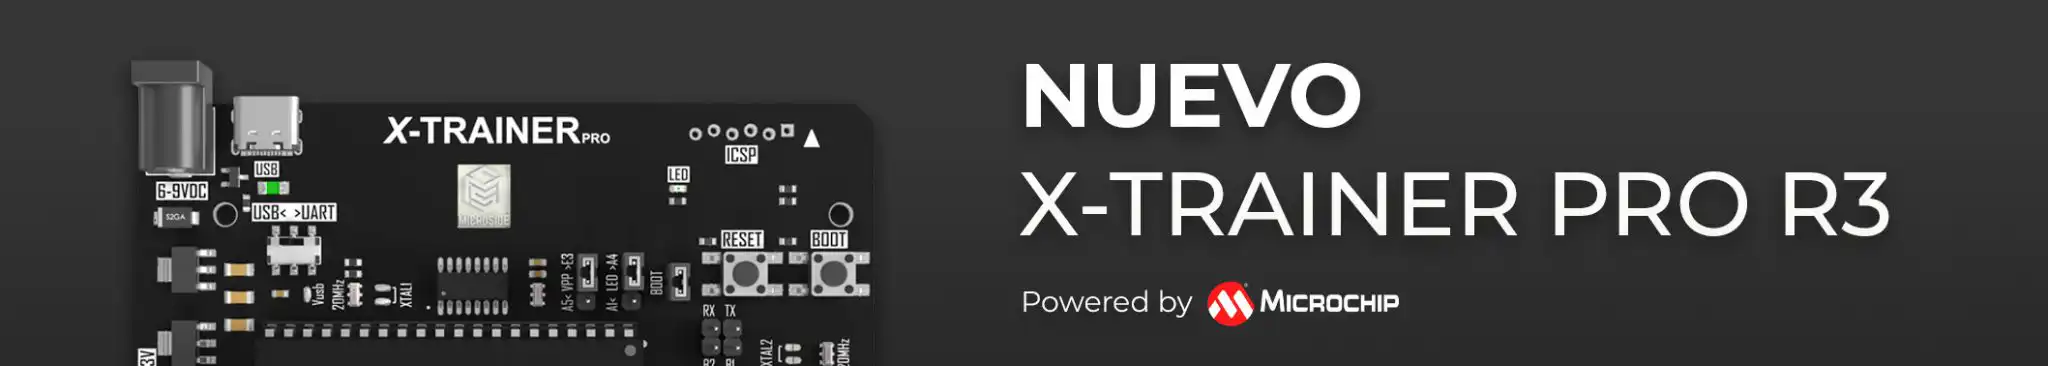 X-TRAINER PRO INCLUYE PRÁCTICAS